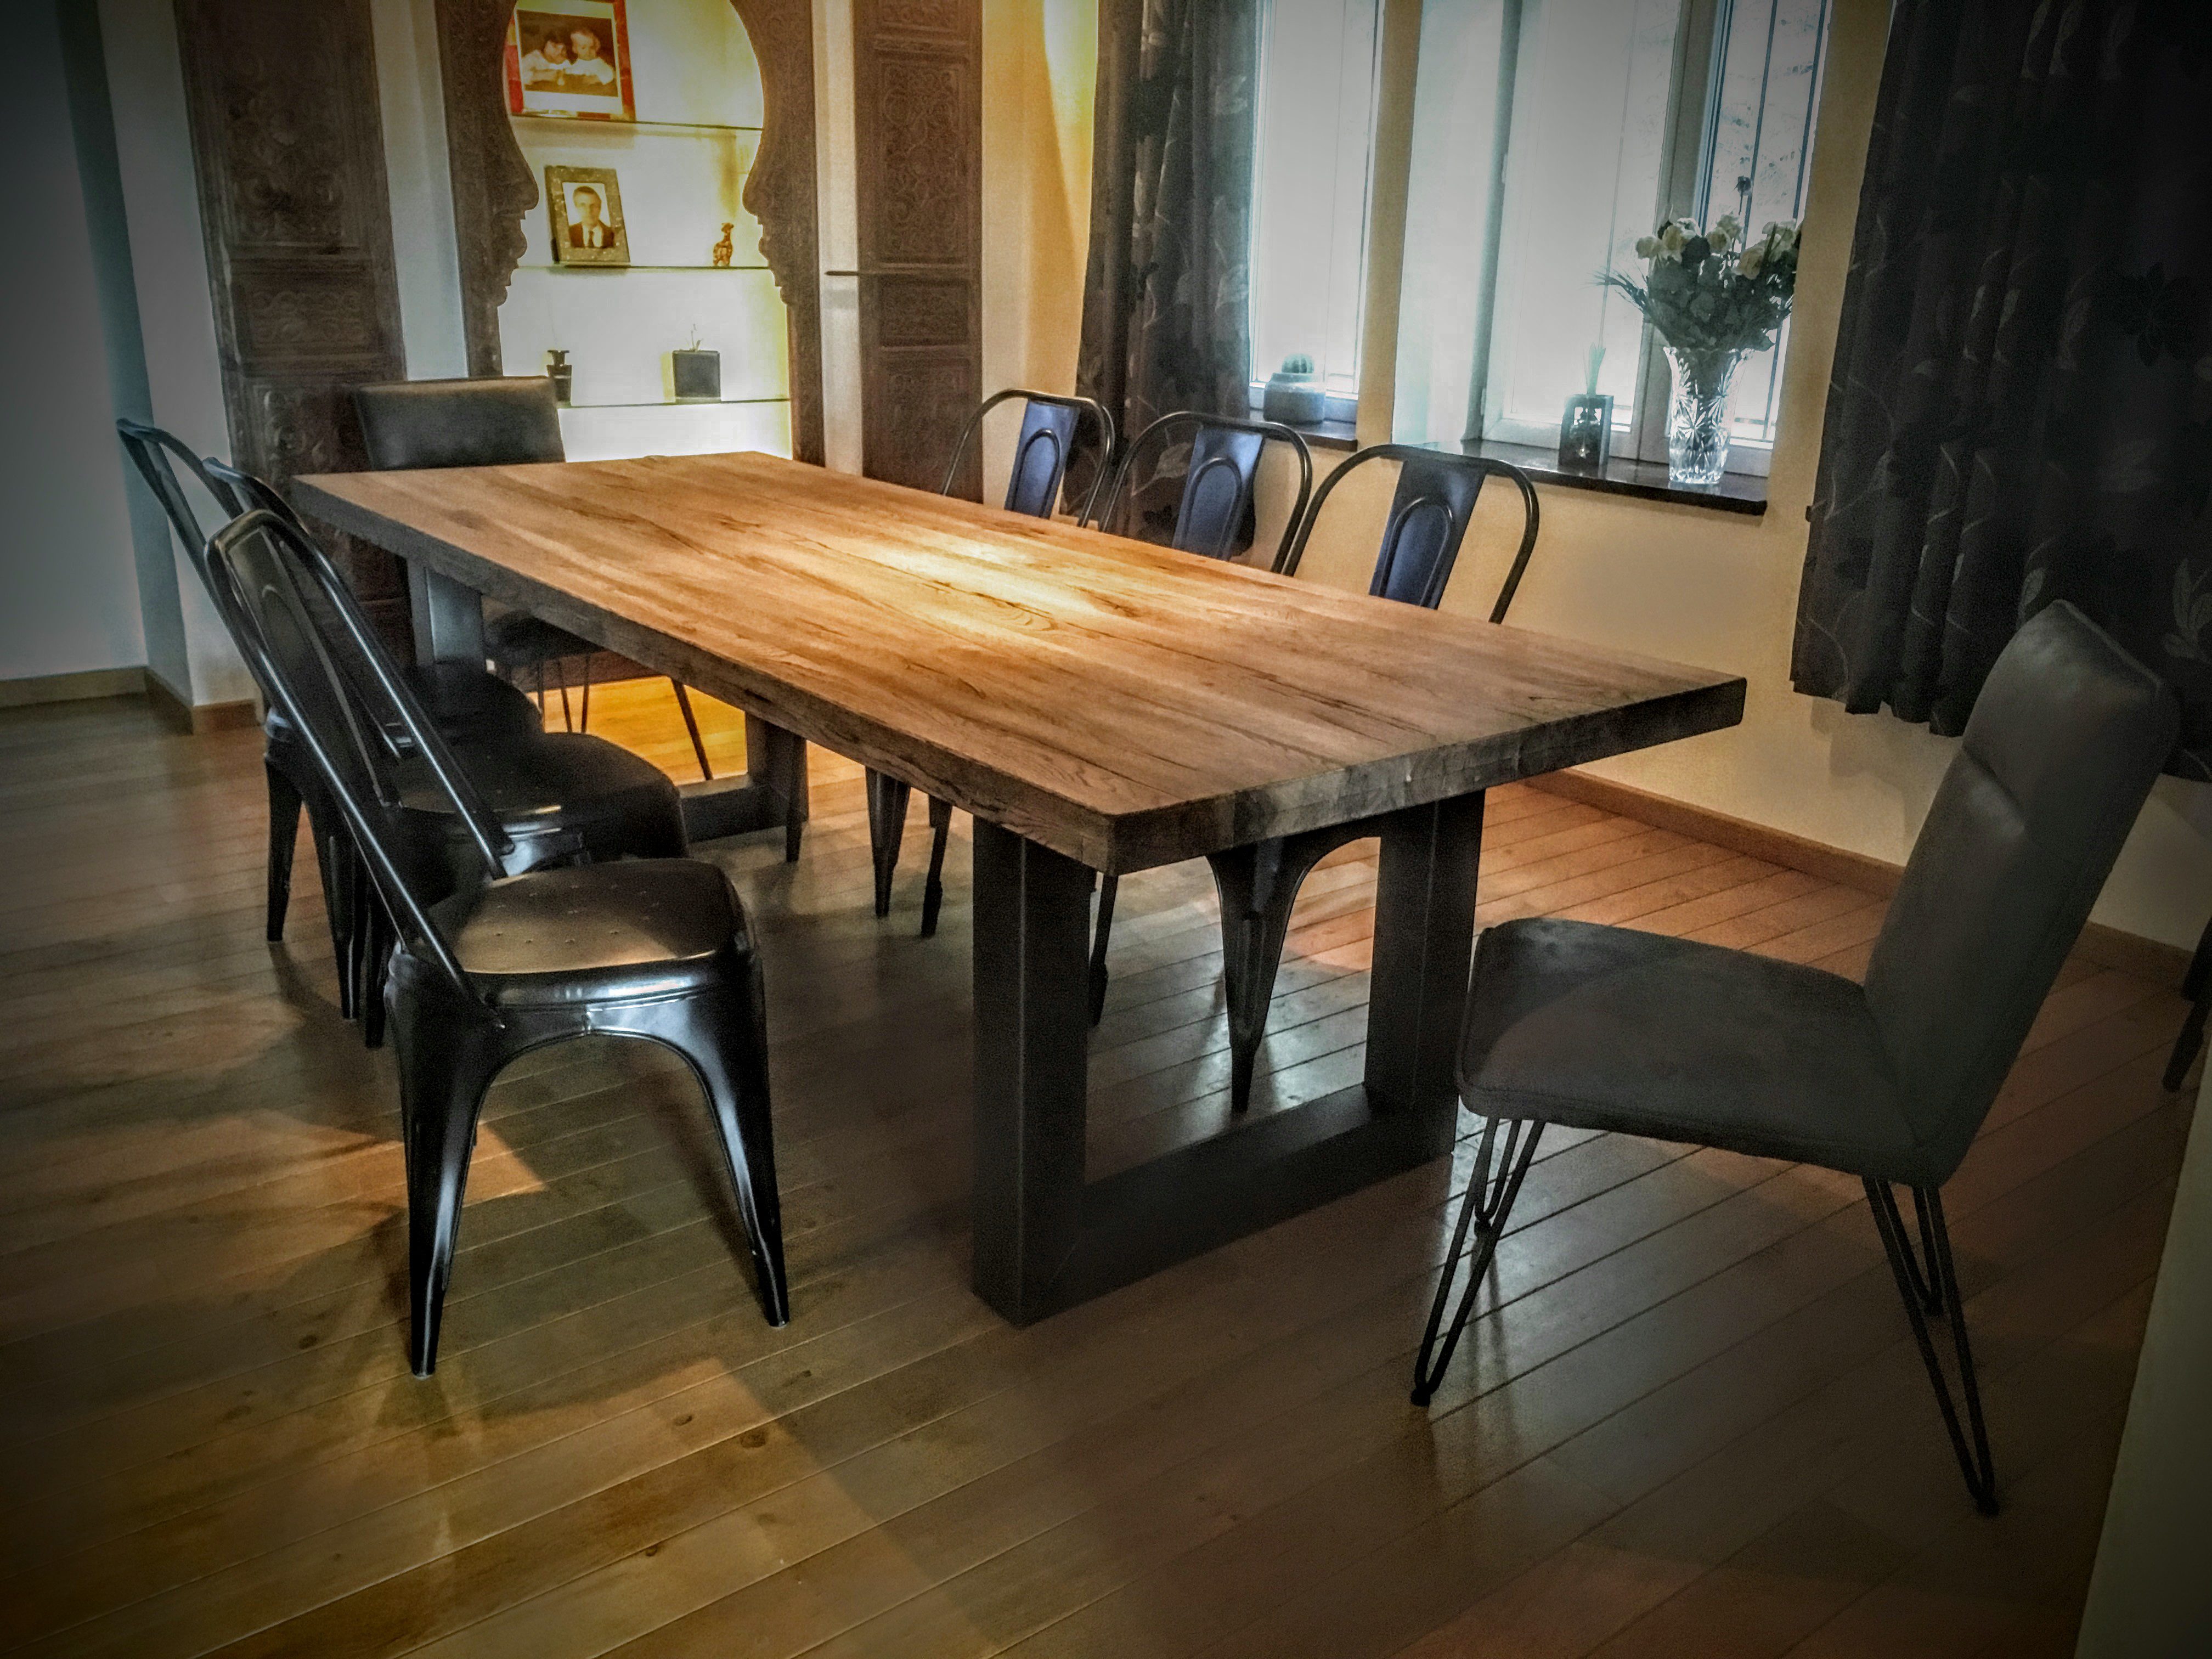  Table  Scandinave Pied U en Acier Bois  M tal  Design